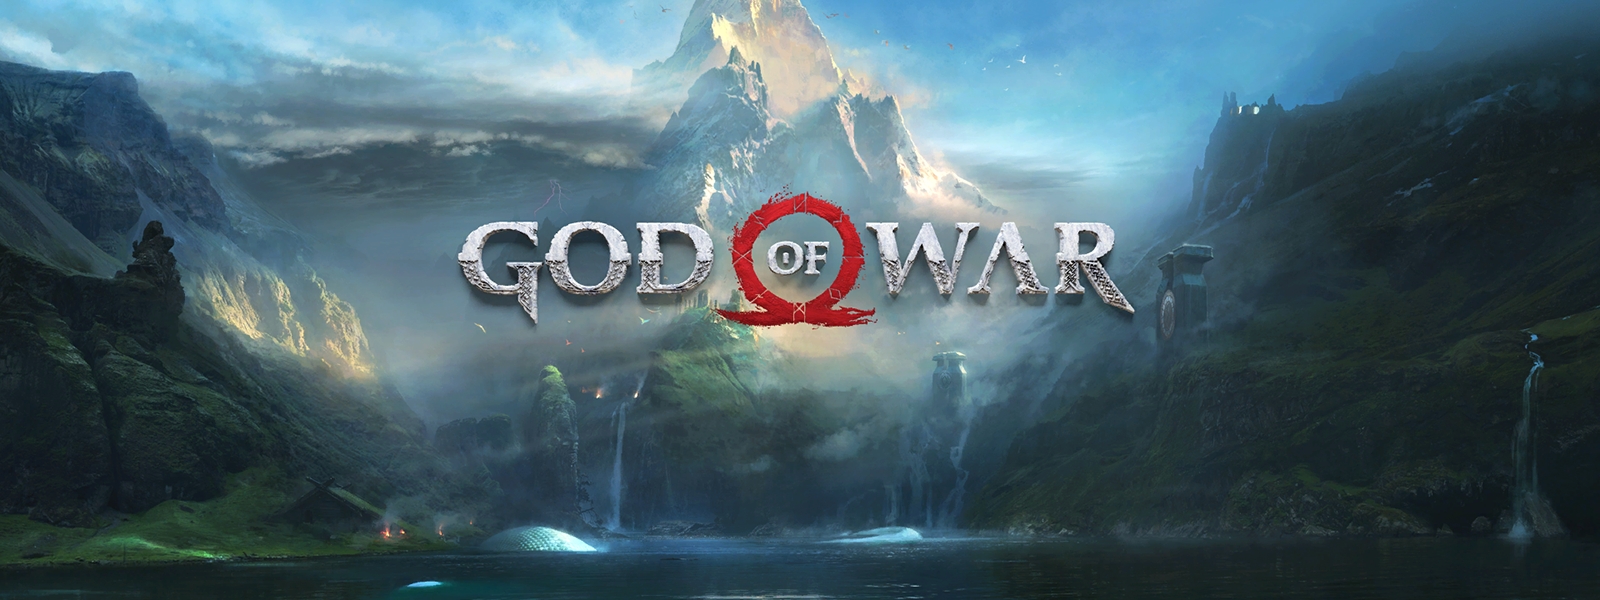 God of War: как убрать черную рамку и перейти в полноэкранный режим?